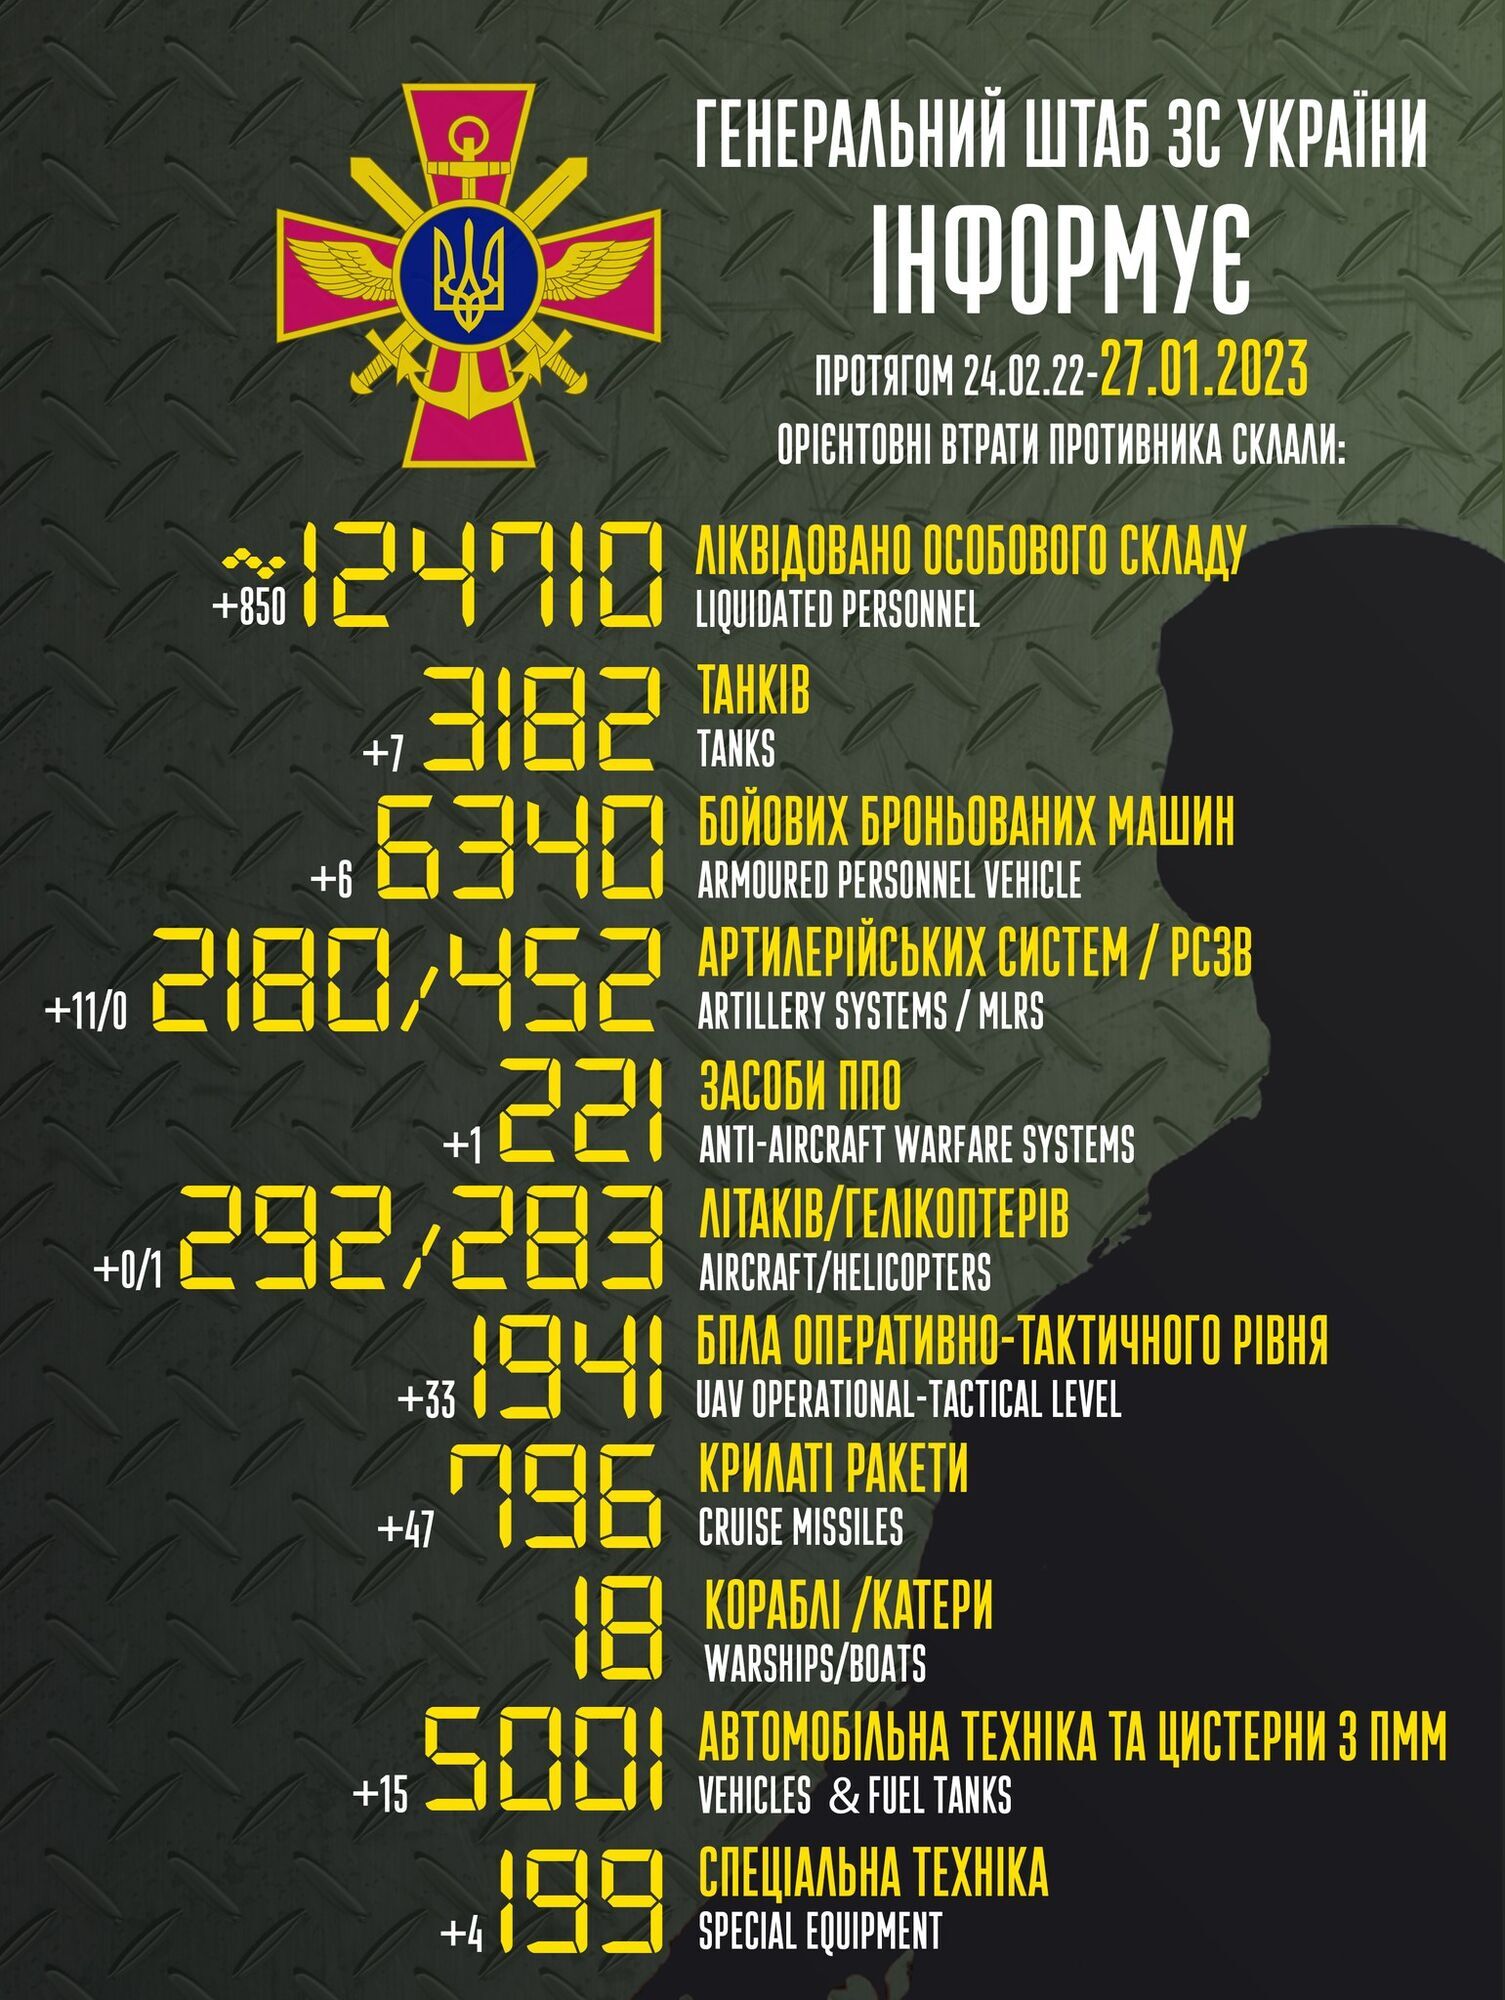 Потери живой силы ВС РФ в Украине превысили 124,7 тыс. человек: за сутки ликвидированы 850 захватчиков